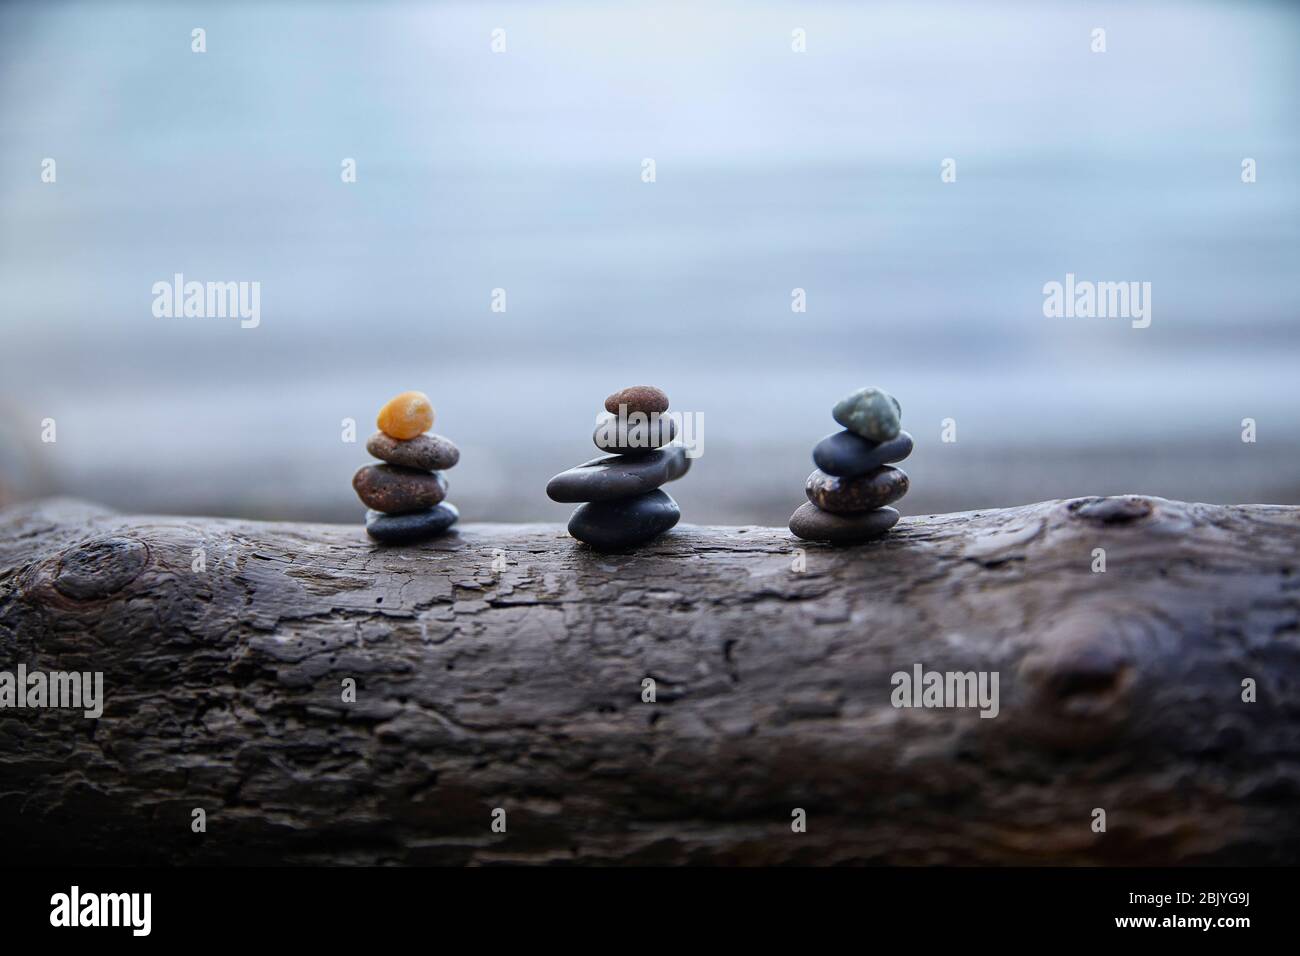 USA, Washington, San Juan County, Orcas Island, Stacks of pebbles on log Stock Photo